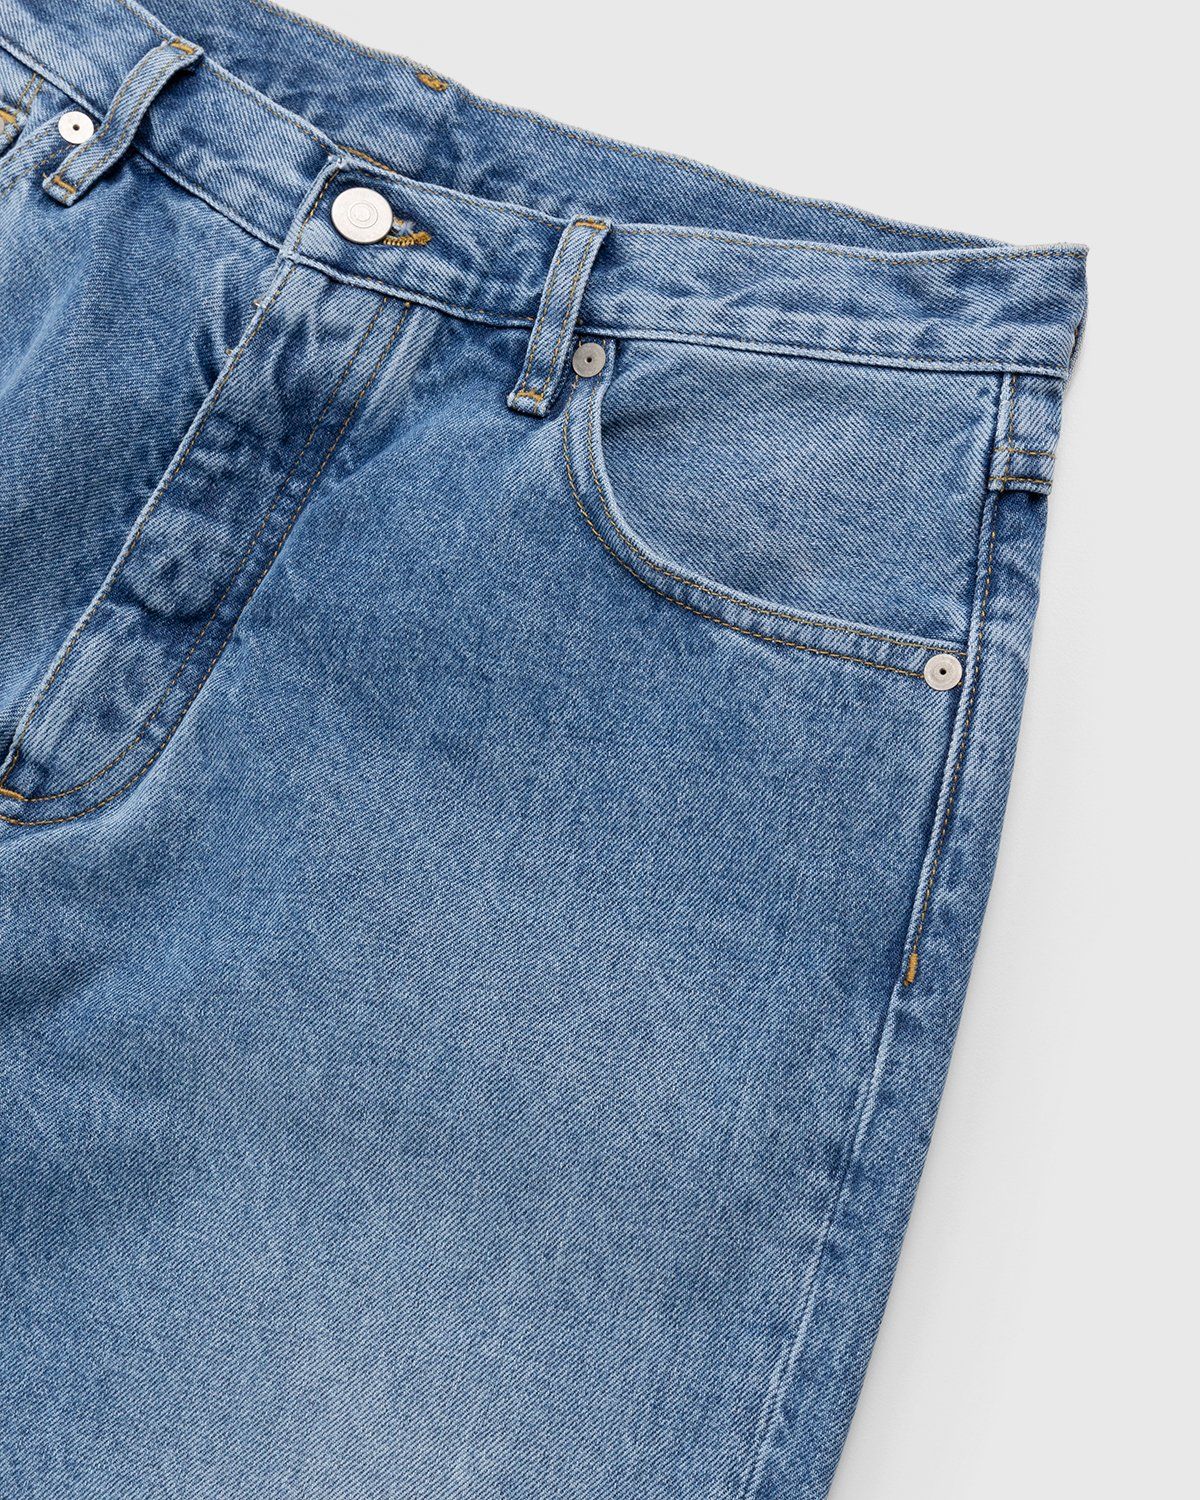 Maison Margiela – Five-Pocket Jeans Blue - Pants - Blue - Image 3